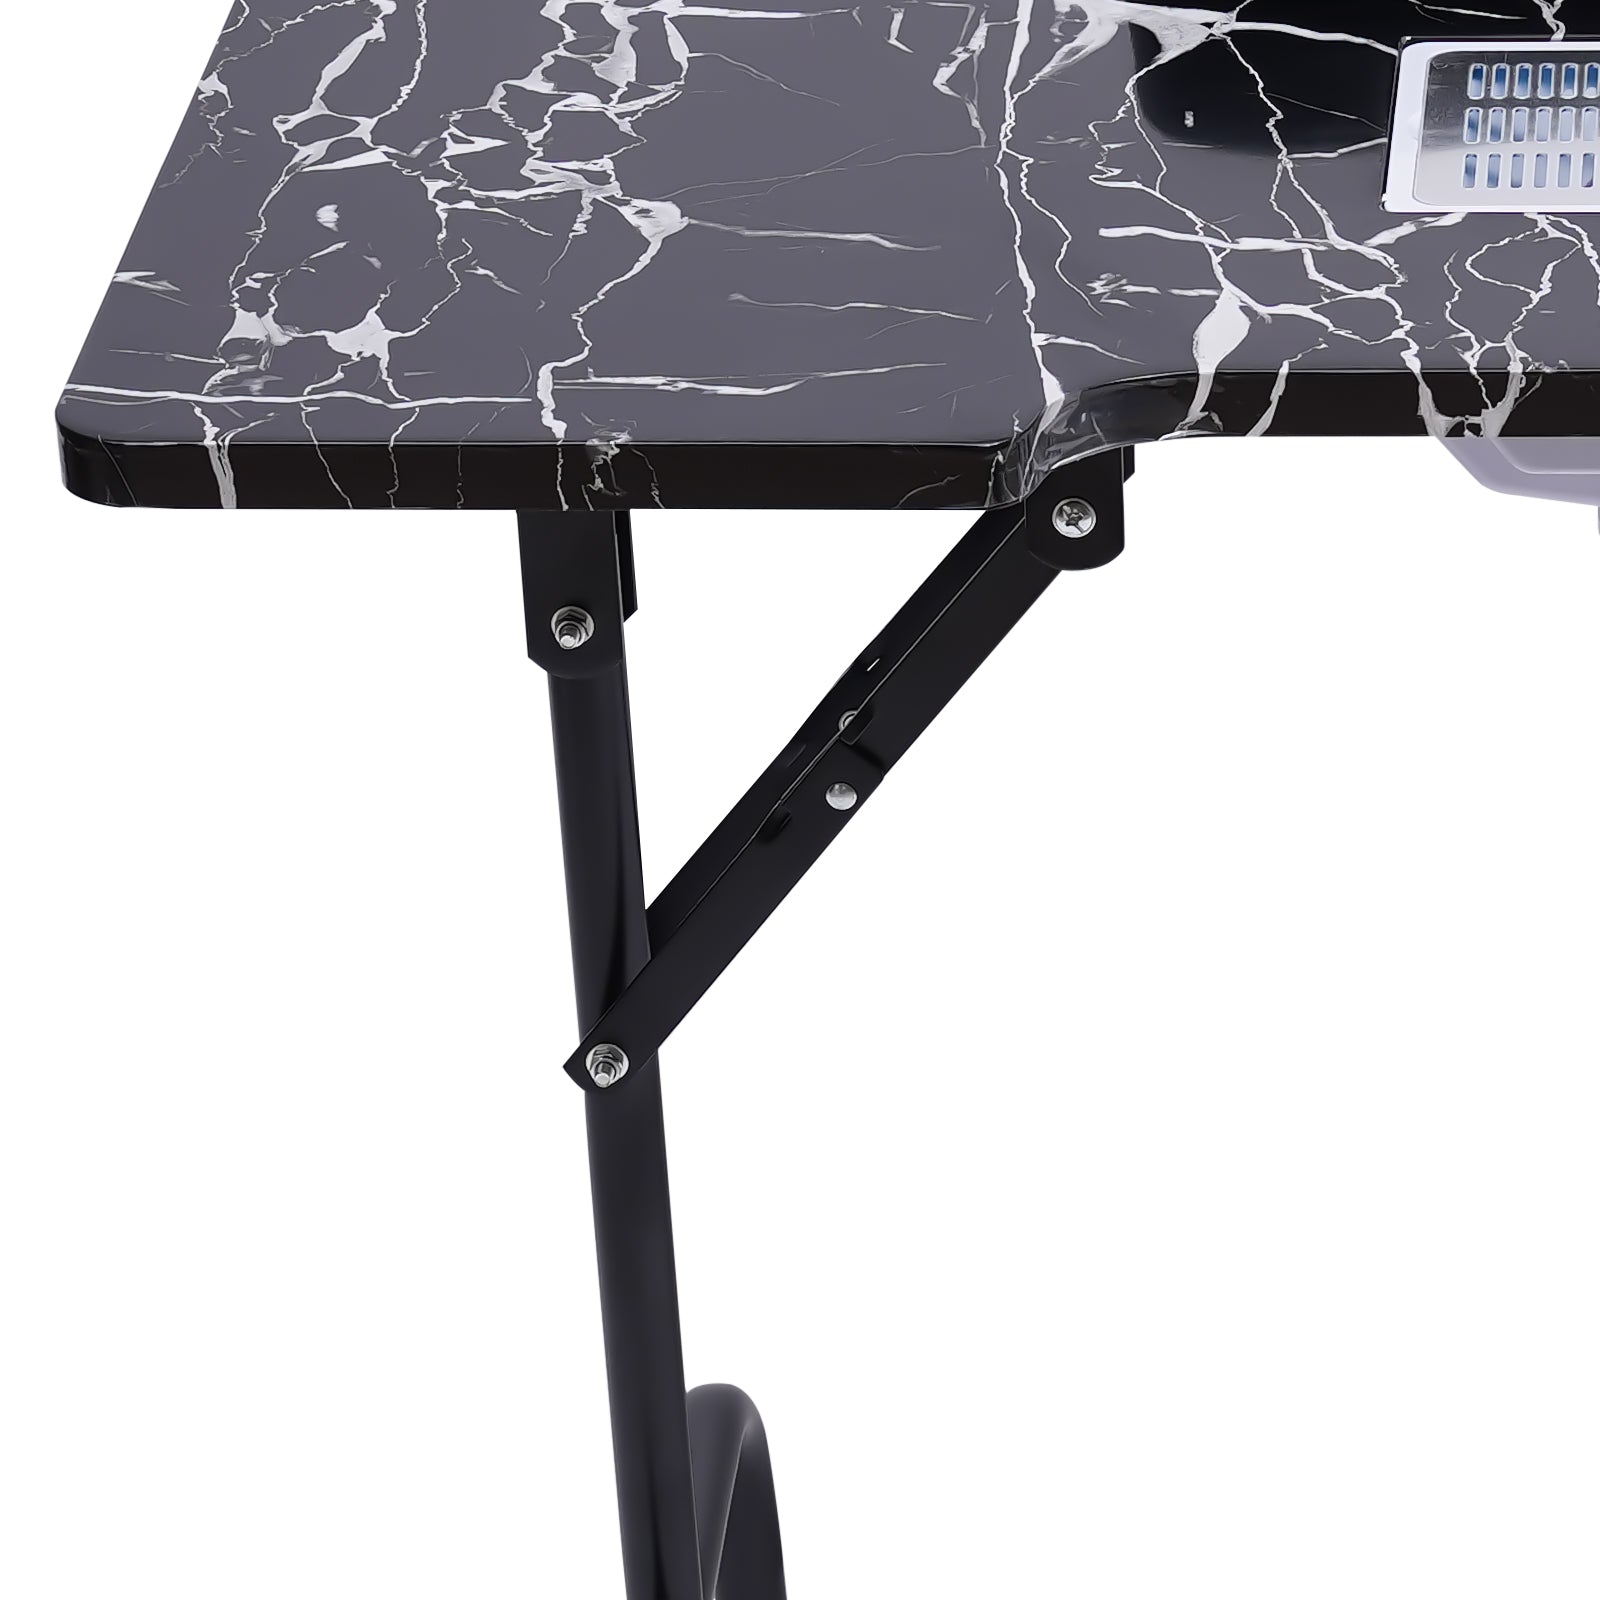 Manicure portatile tavolo per unghie con aspirazione e poggiapolsi, tavolo portatile, tavolo pieghevole, 90 x 40 x 72 cm